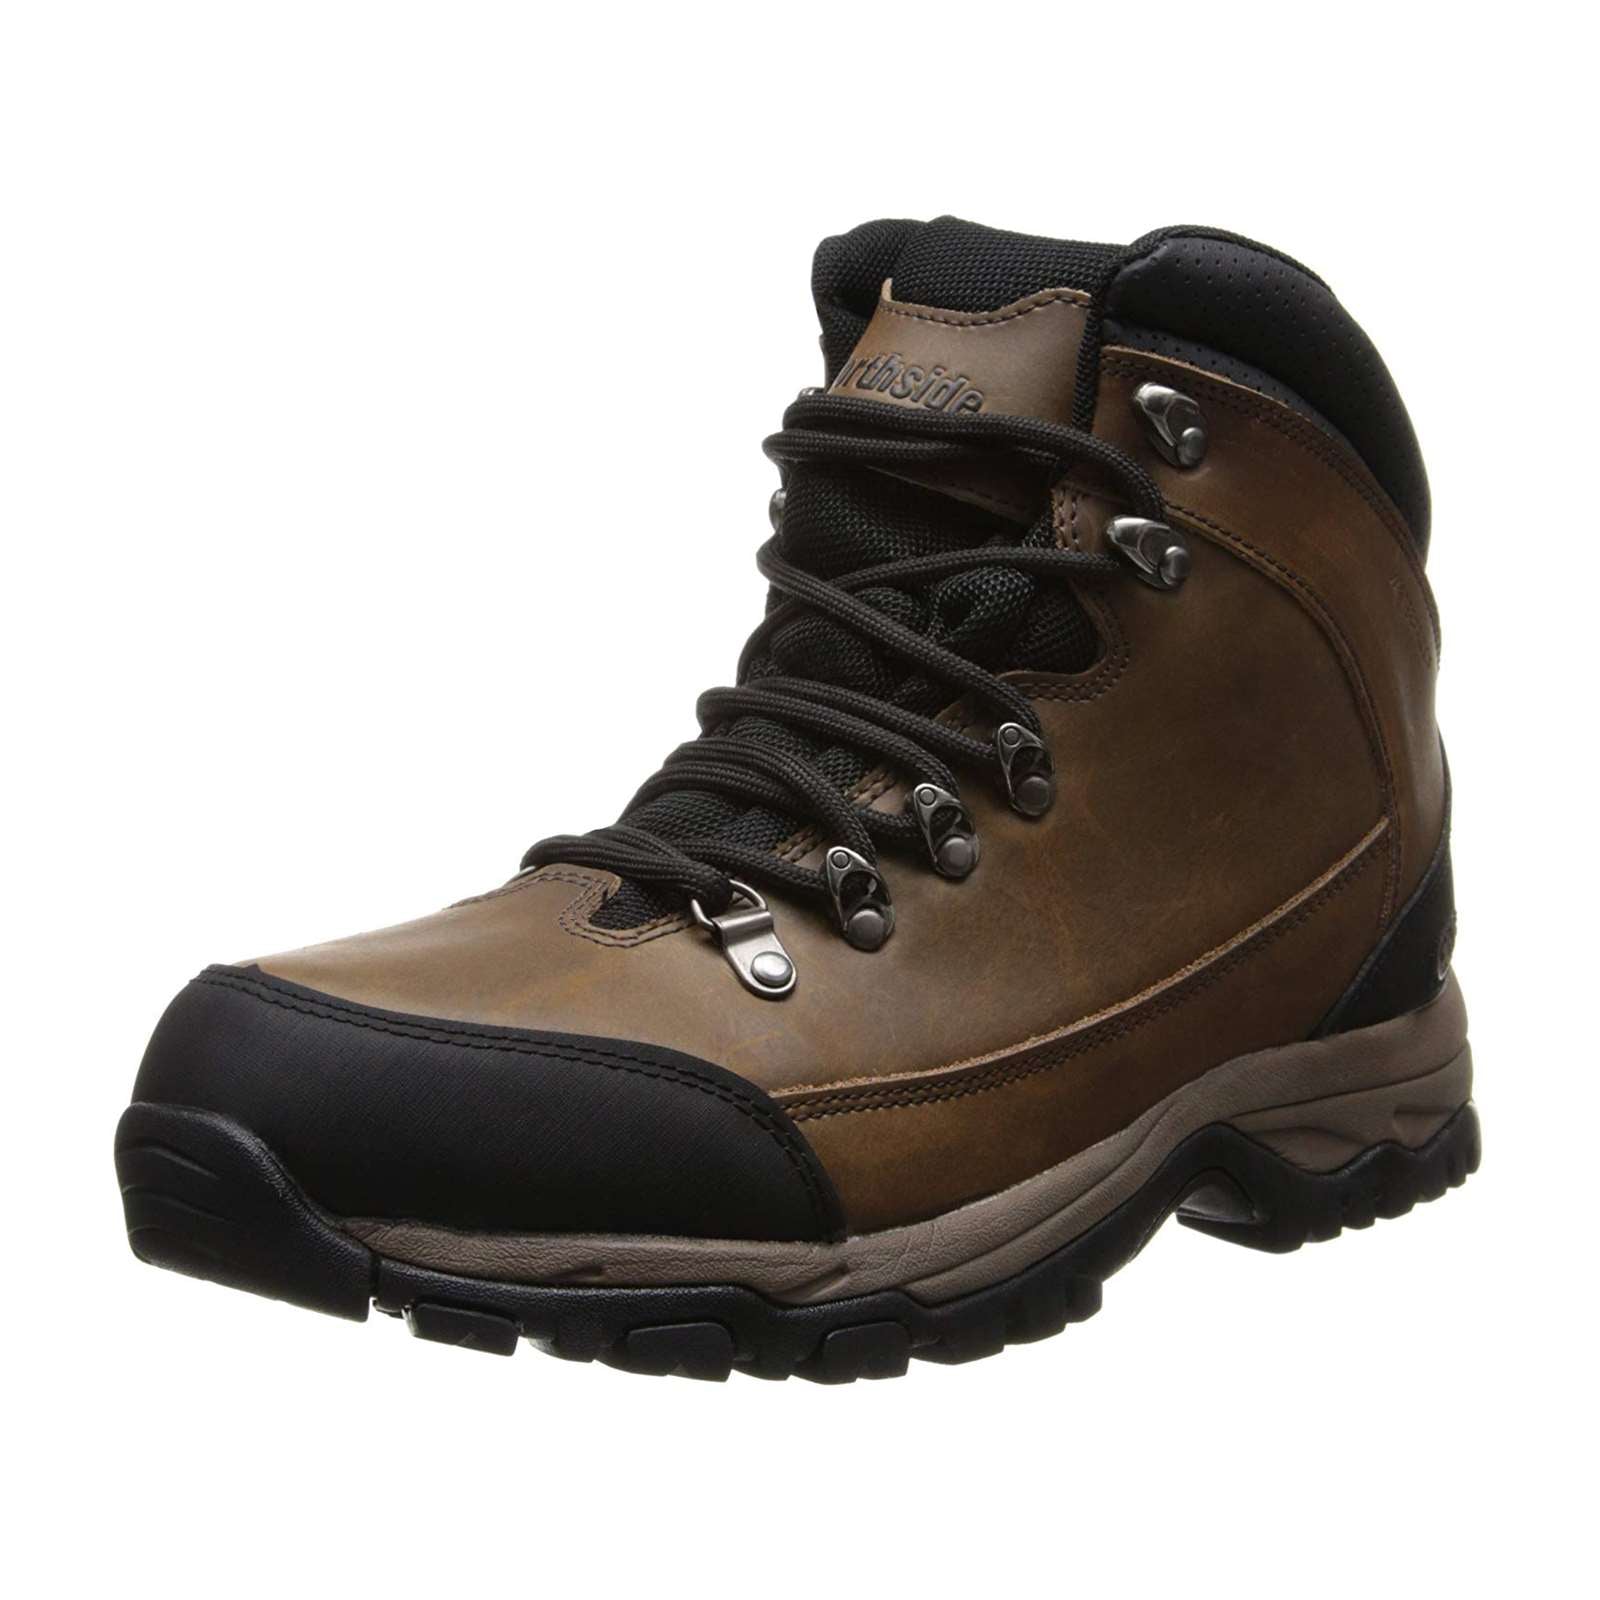 Northside Men Mckinley Waterproof Hiking Boots